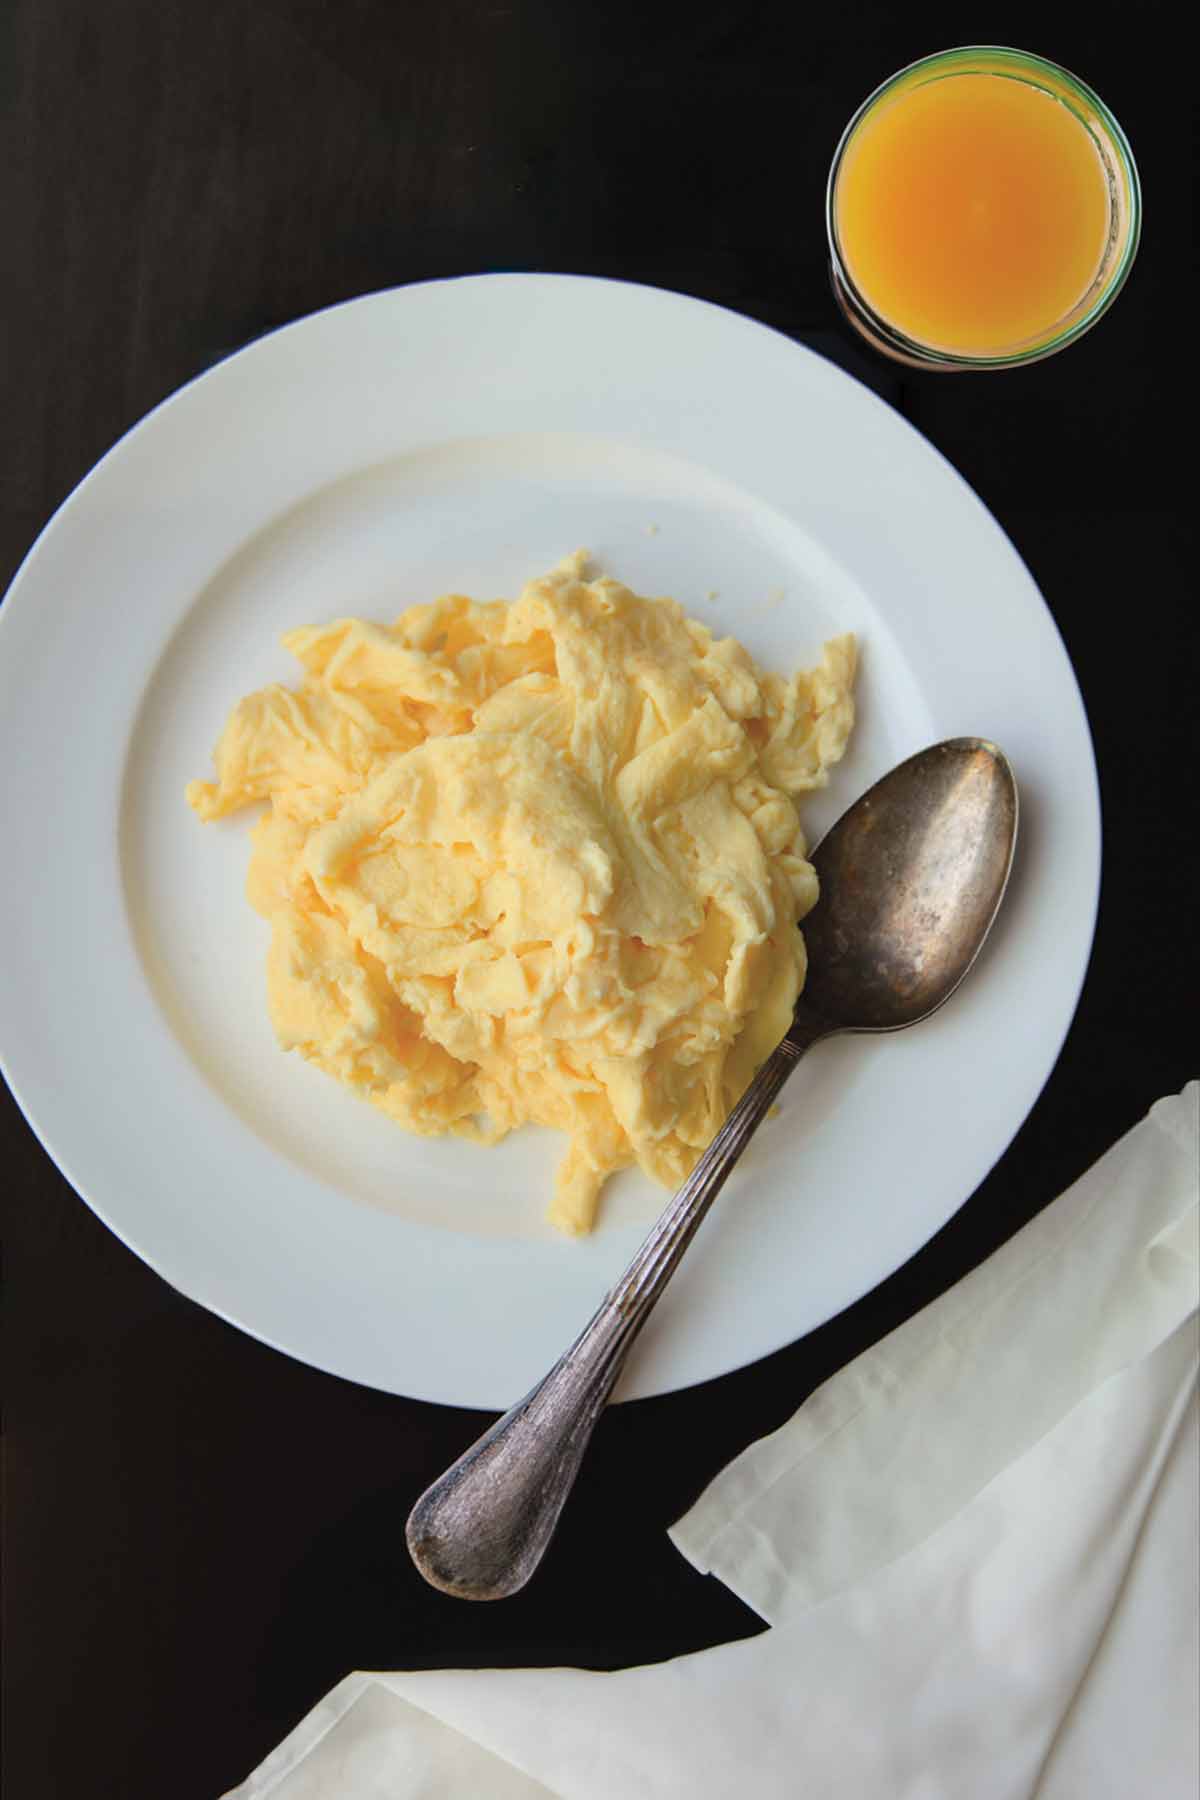 كومة من البيض المخفوق المثالي على طبق أبيض مع ملعقة بجانب البيض.